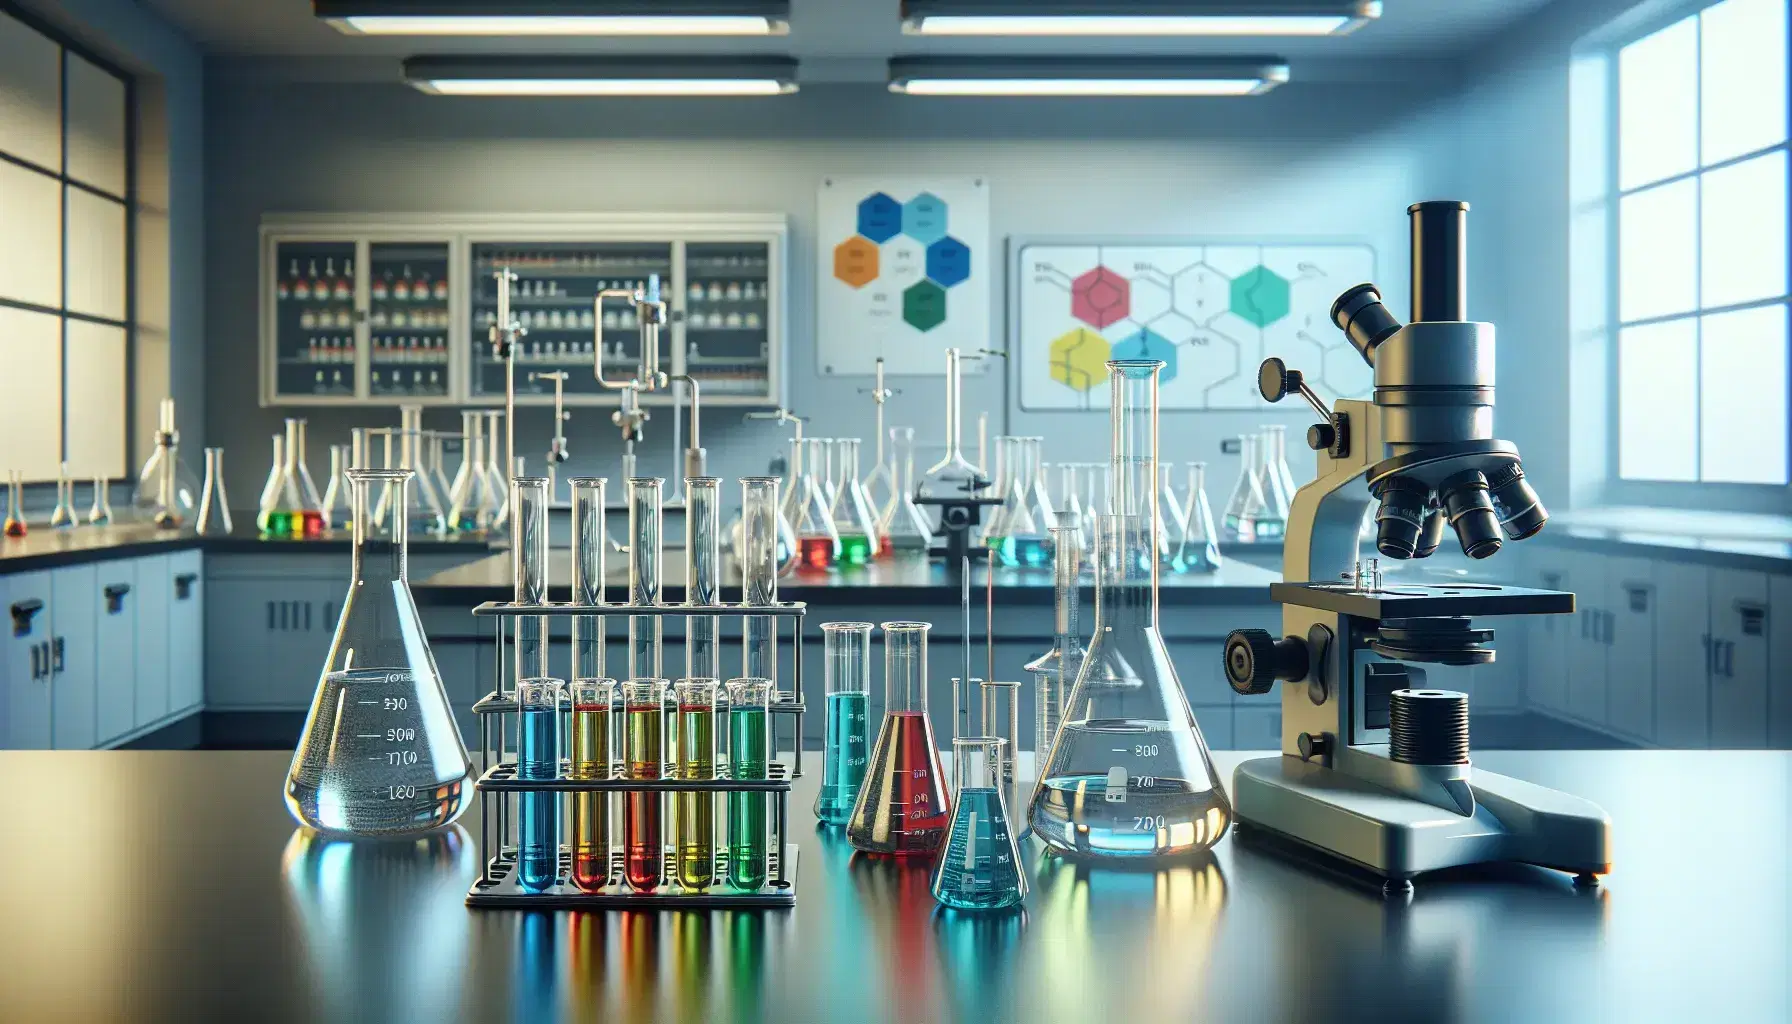 Laboratorio de química con tubos de ensayo de colores, mechero Bunsen y microscopio, en un ambiente limpio y profesional.